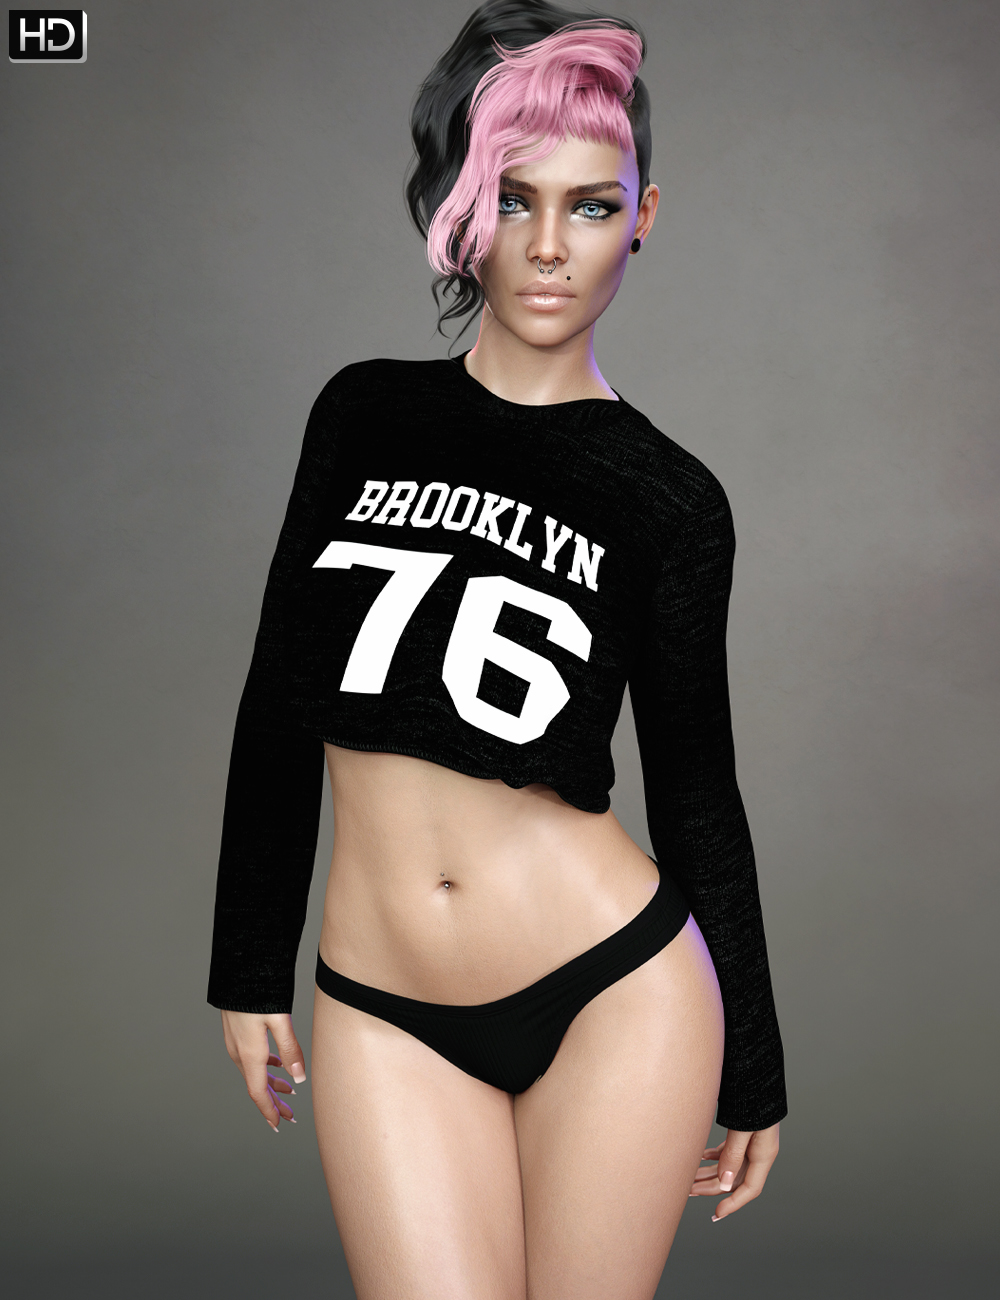 Emily HD for Genesis 8.1 Female by: Emrys, 3D Models by Daz 3D